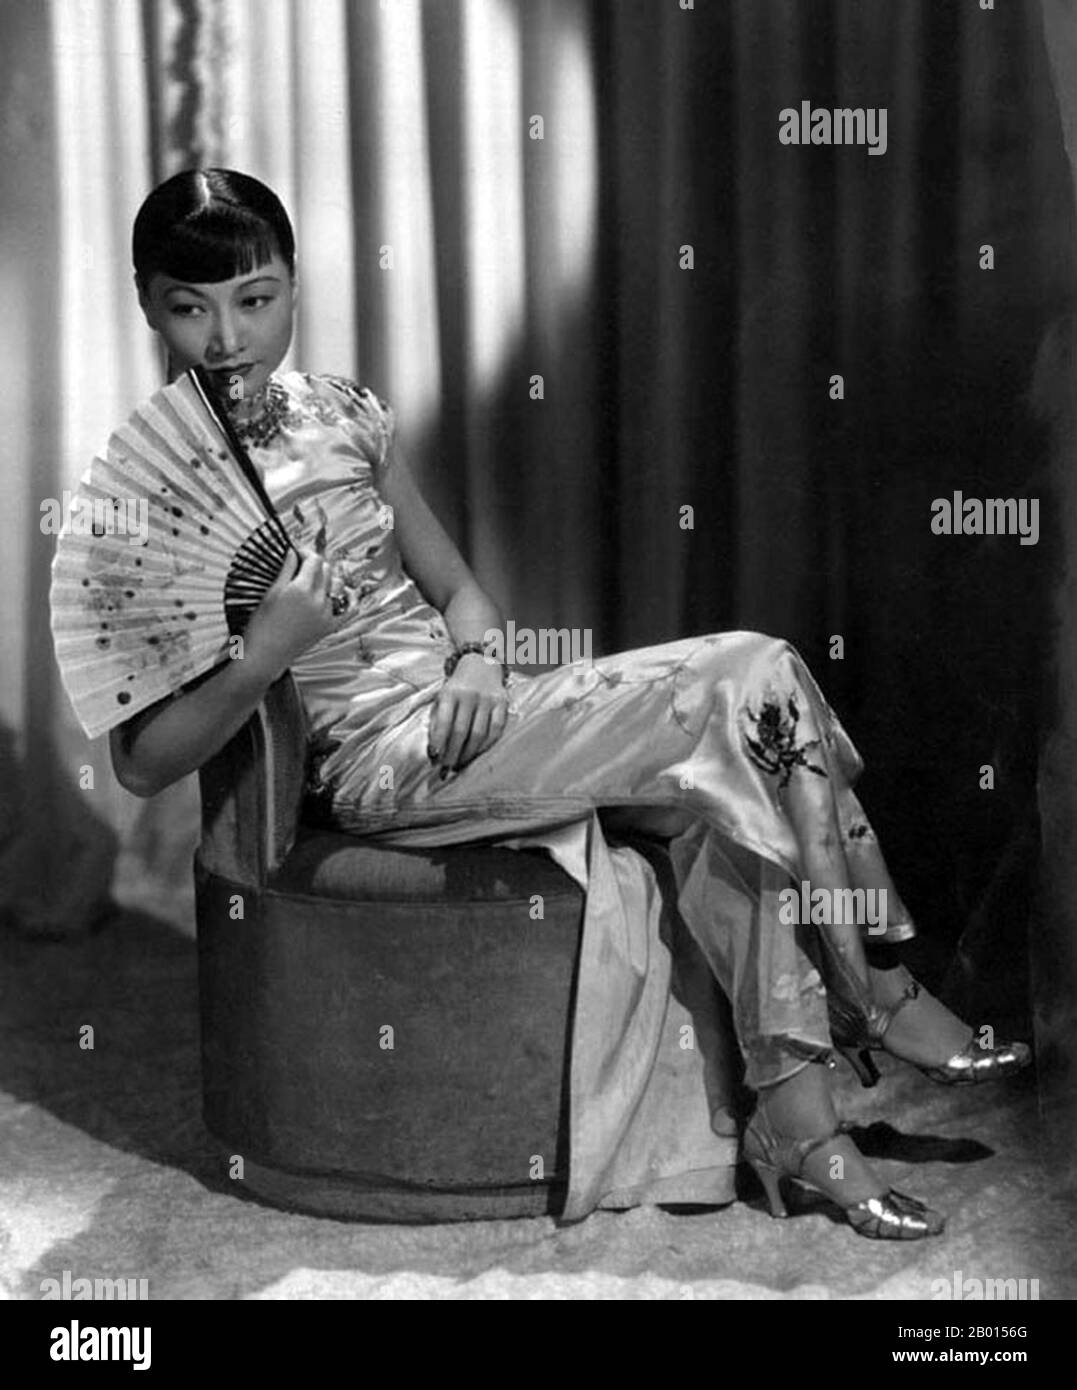 États-Unis : Anna May Wong, star de cinéma sino-américaine (3 janvier 1905 – 3 février 1961), ch. 1920. Anna May Wong était une actrice américaine, la première star de cinéma américaine chinoise, et la première américaine asiatique à devenir une star internationale. Sa longue et variée carrière s'est étendue à la fois au cinéma silencieux et au son, à la télévision, à la scène et à la radio. Né près du quartier chinois de Los Angeles, de parents sino-américains de deuxième génération, Wong s'est fait infecter par les films et a commencé à jouer dans les films à un âge précoce. Banque D'Images